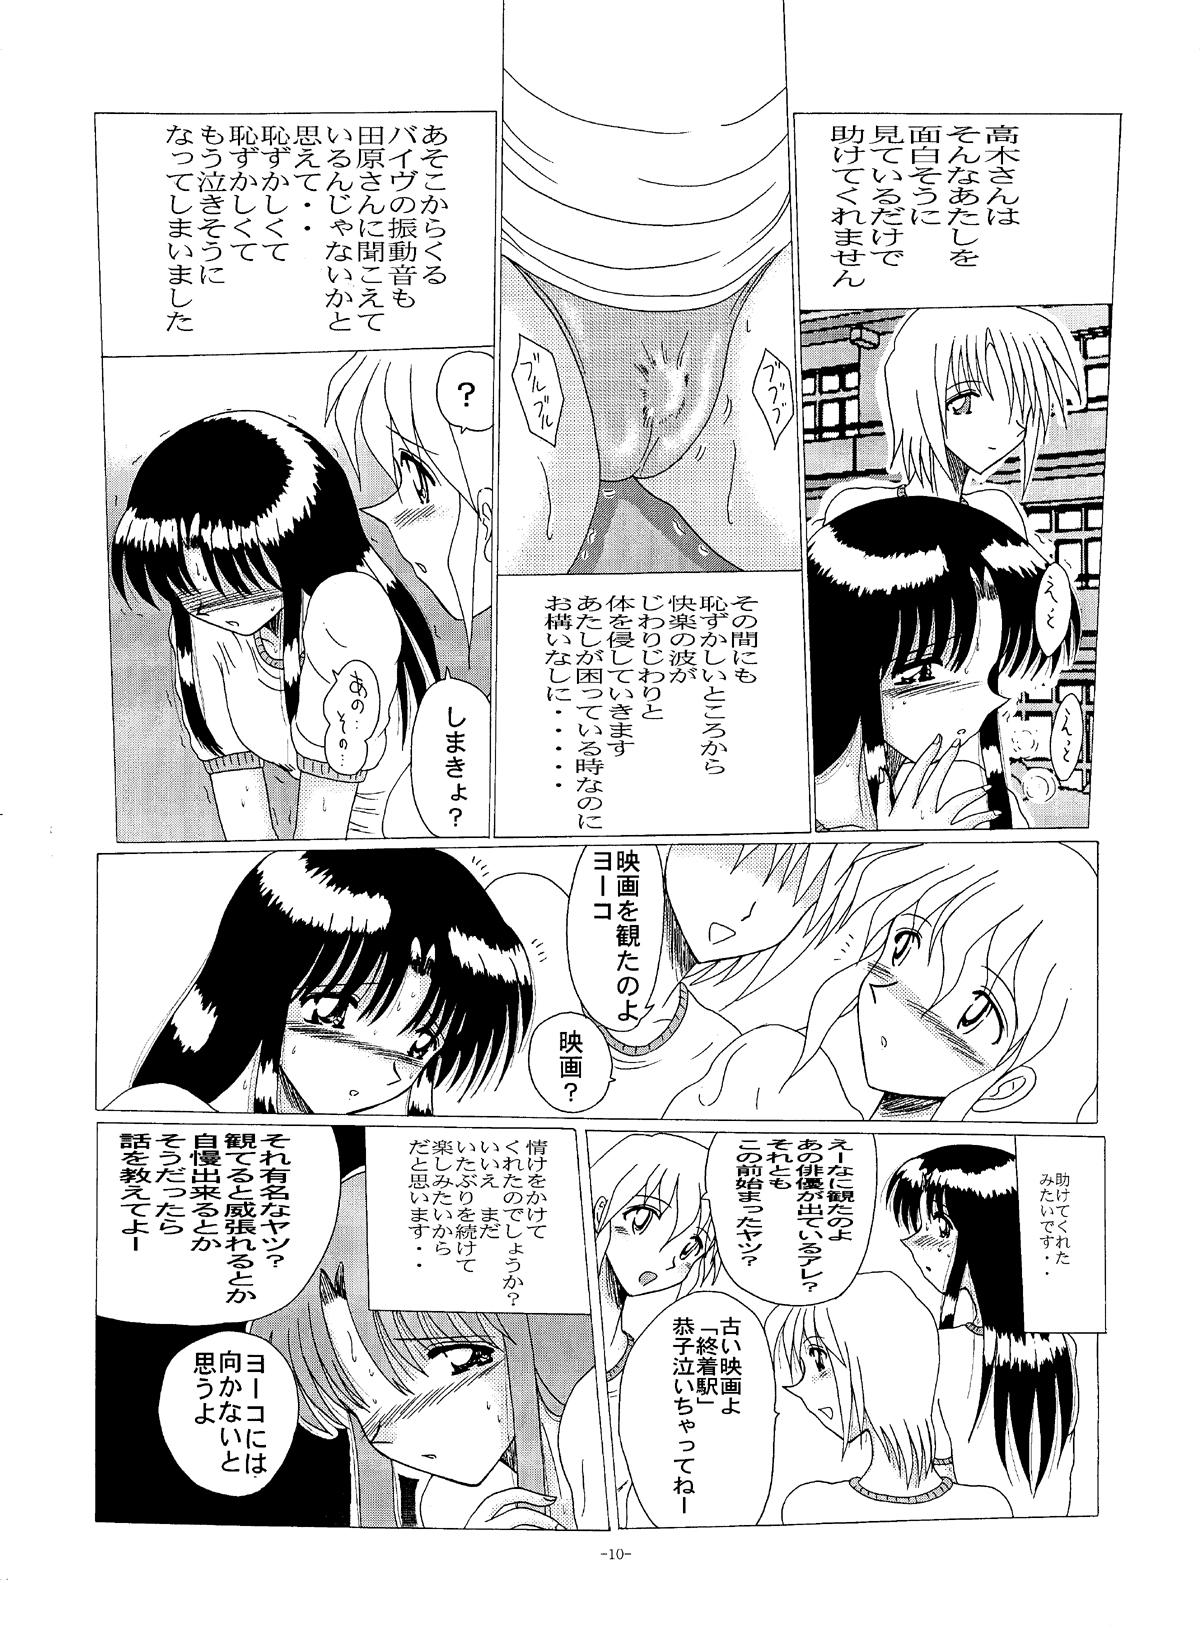 Harcore Shinsei Maso no Kiroku 2 - Original Jock - Page 9